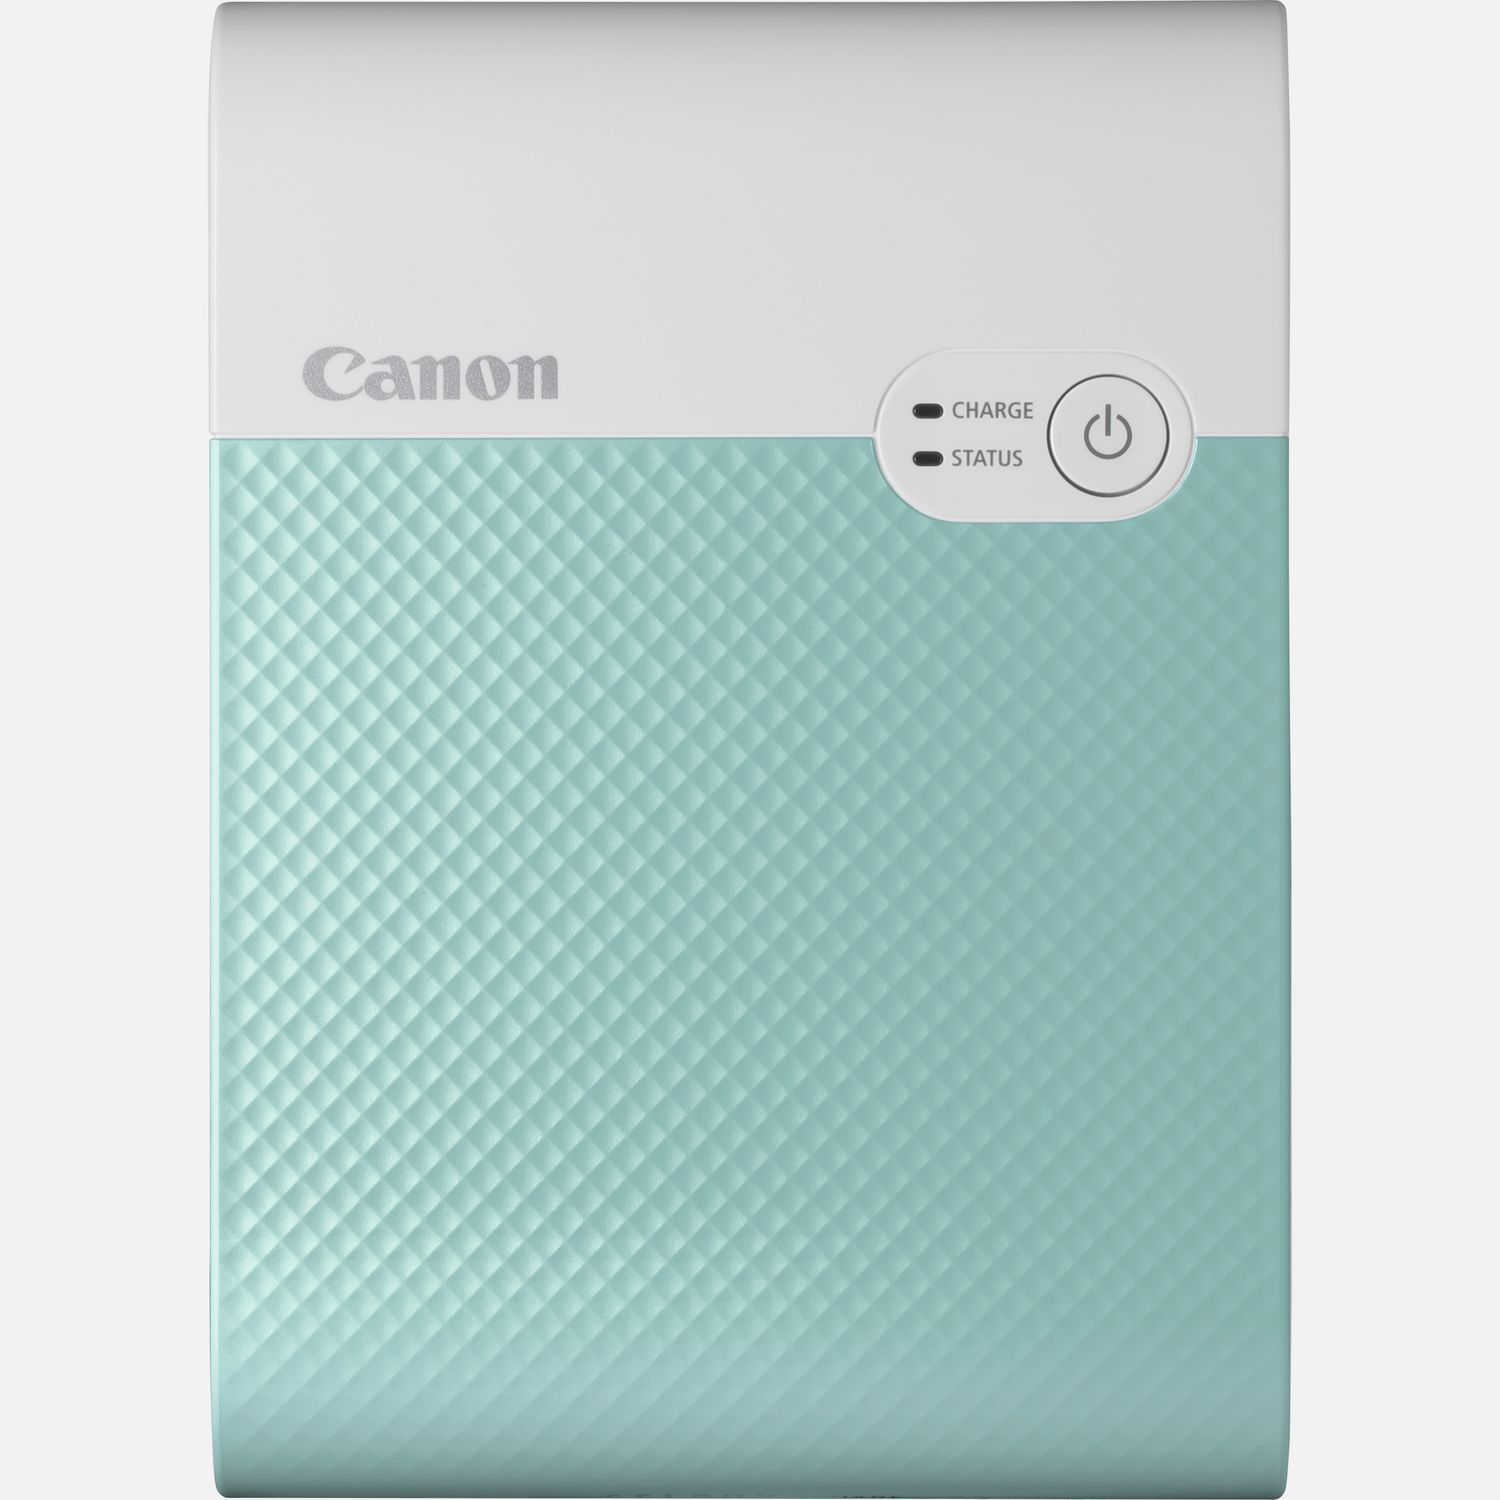 Image of Stampante fotografica portatile wireless a colori Canon SELPHY SQUARE QX10, verde menta